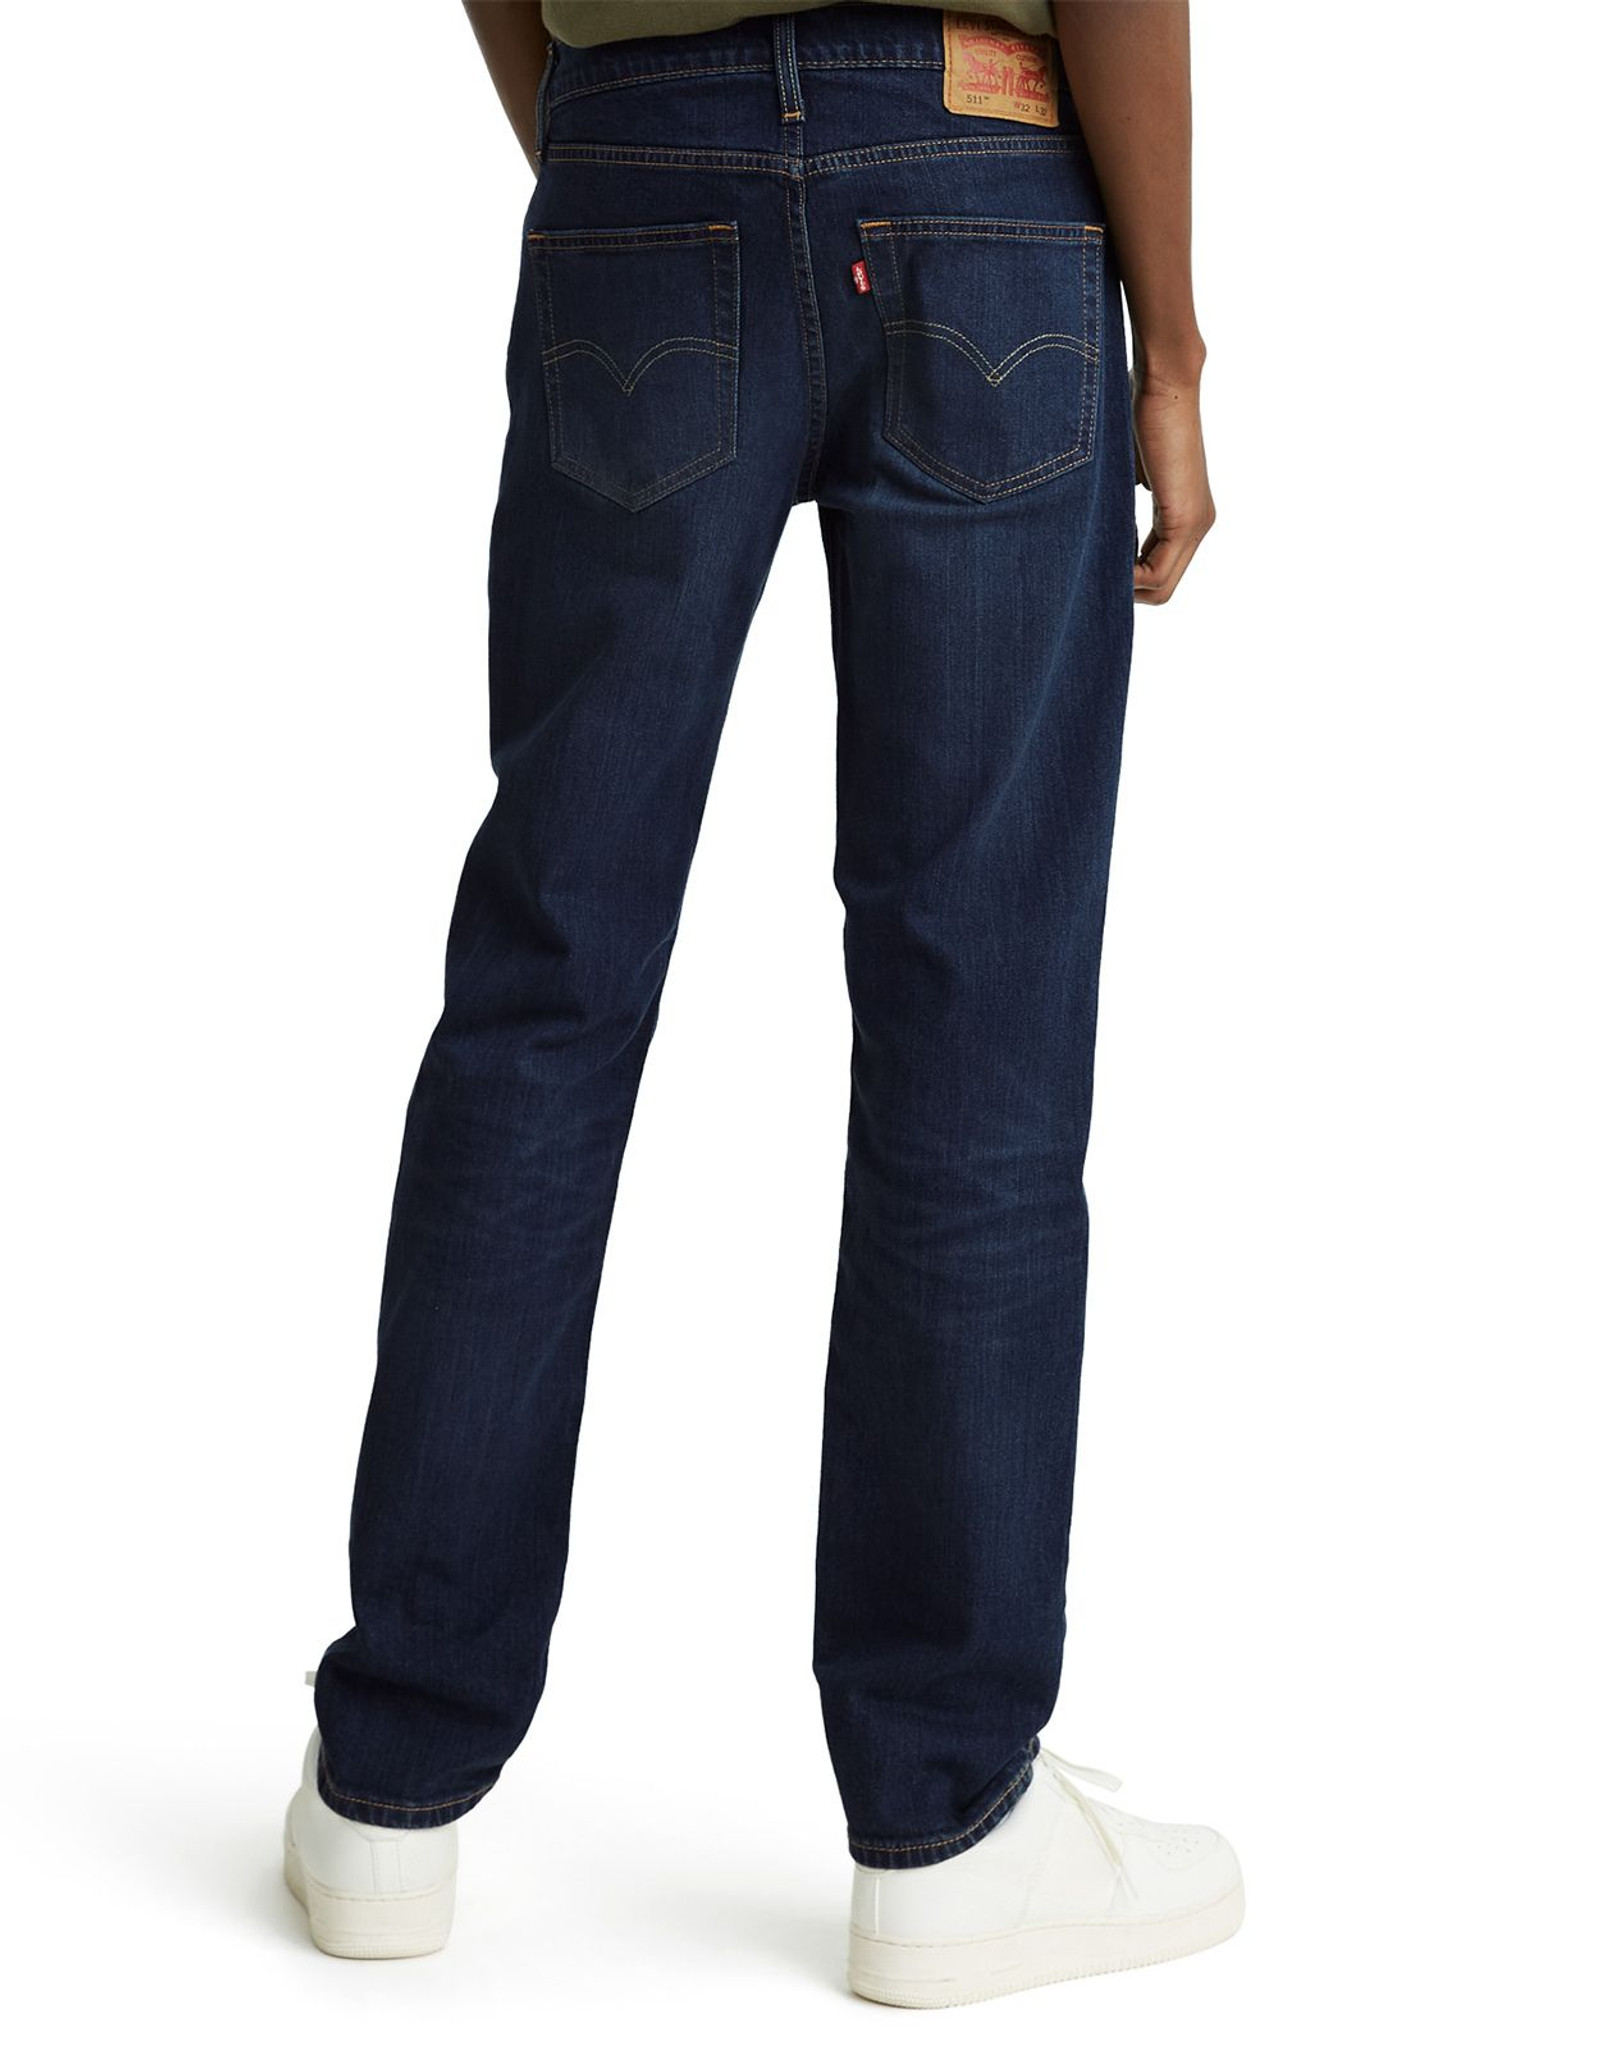 Levi's Men's 531 Athletic Slim Stretch Low Rise Slim Fit Slim Leg Jeans - Myers Crescent (Closeout)